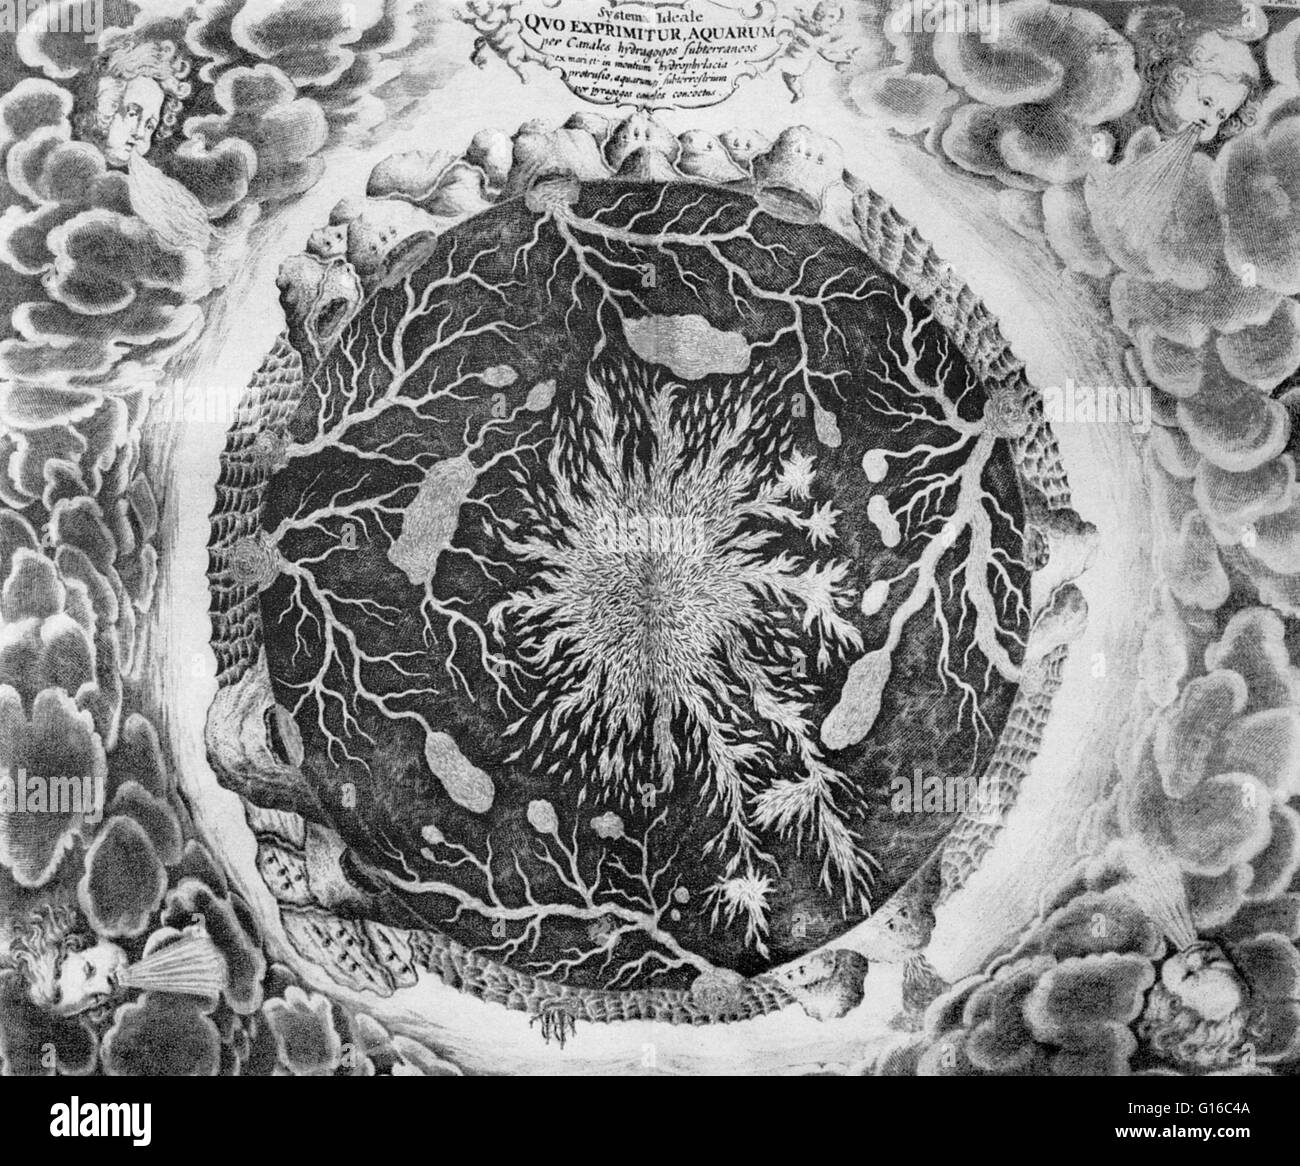 Illustrazione di Athanasius Kircher dal suo 1664 prenota Mundus subterraneus. Esso raffigura una sezione della terra con un grande incendio al suo centro, la quale comunica con molti piccoli corpi del fuoco; anche molte caverne entro la massa riempita con acqua; volcan Foto Stock